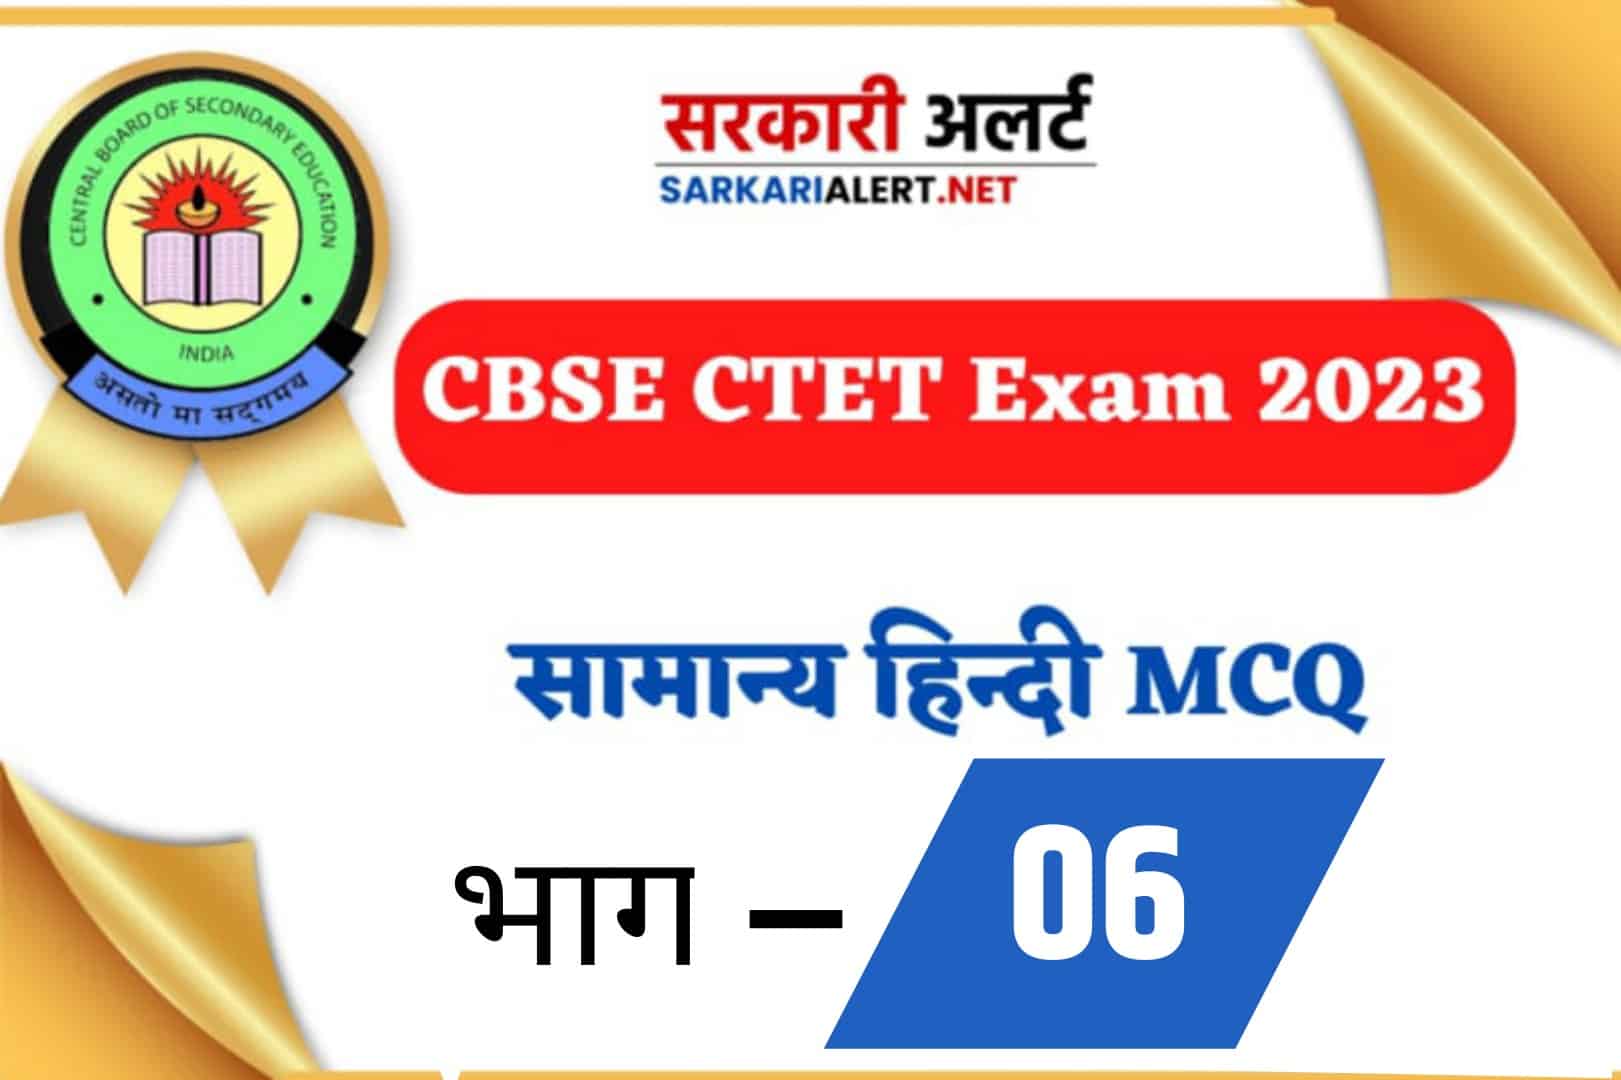 CBSE CTET Exam 2023, Hindi MCQ - 06 | सामान्य हिंदी के 30 महत्वपूर्ण प्रश्न